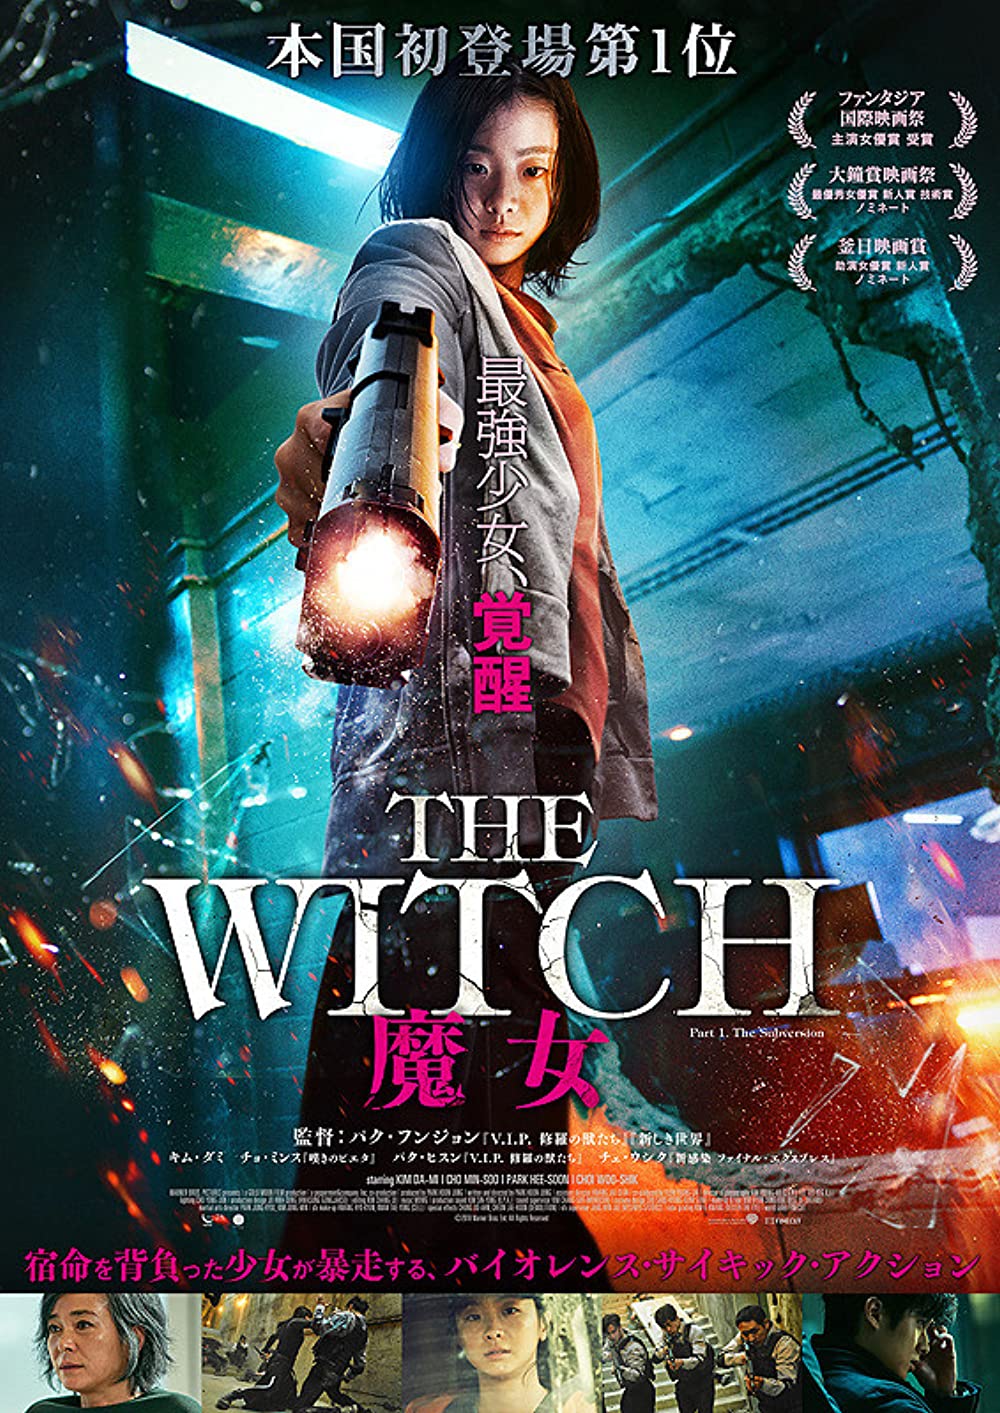 Phim của Kim Da Mi đóng: Sát thủ nhân tạo - The Witch: Part 1. The Subversion (2018)